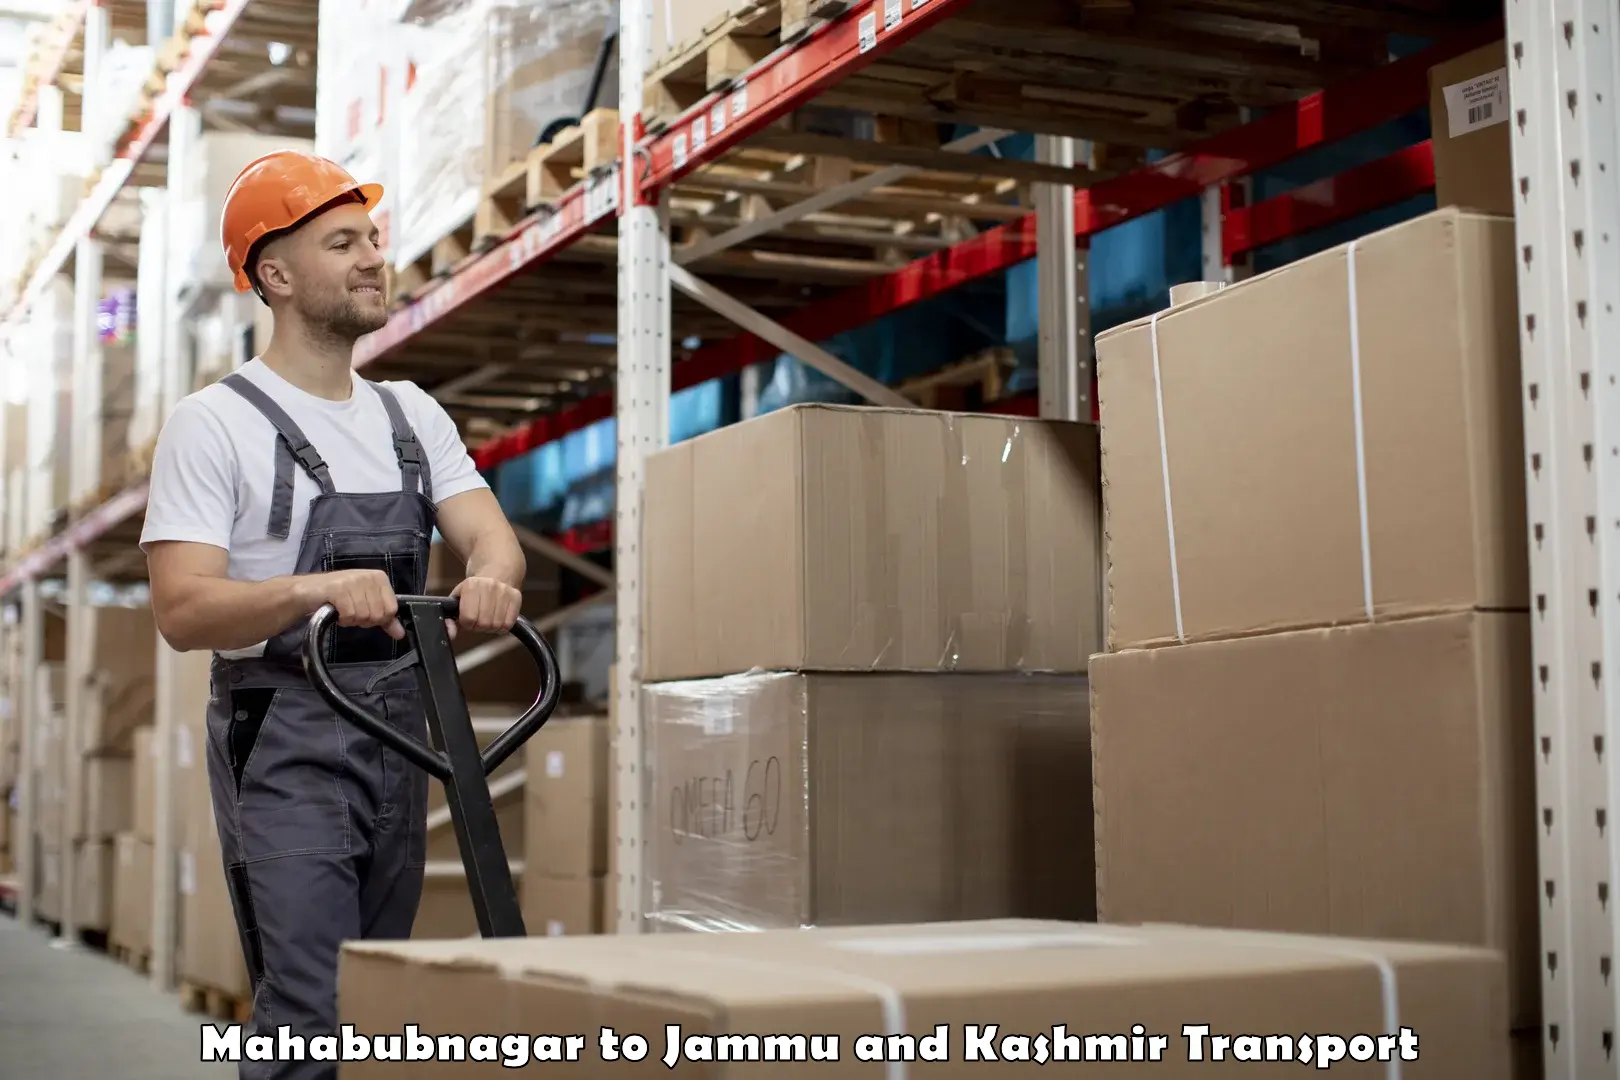 International cargo transportation services Mahabubnagar to Katra